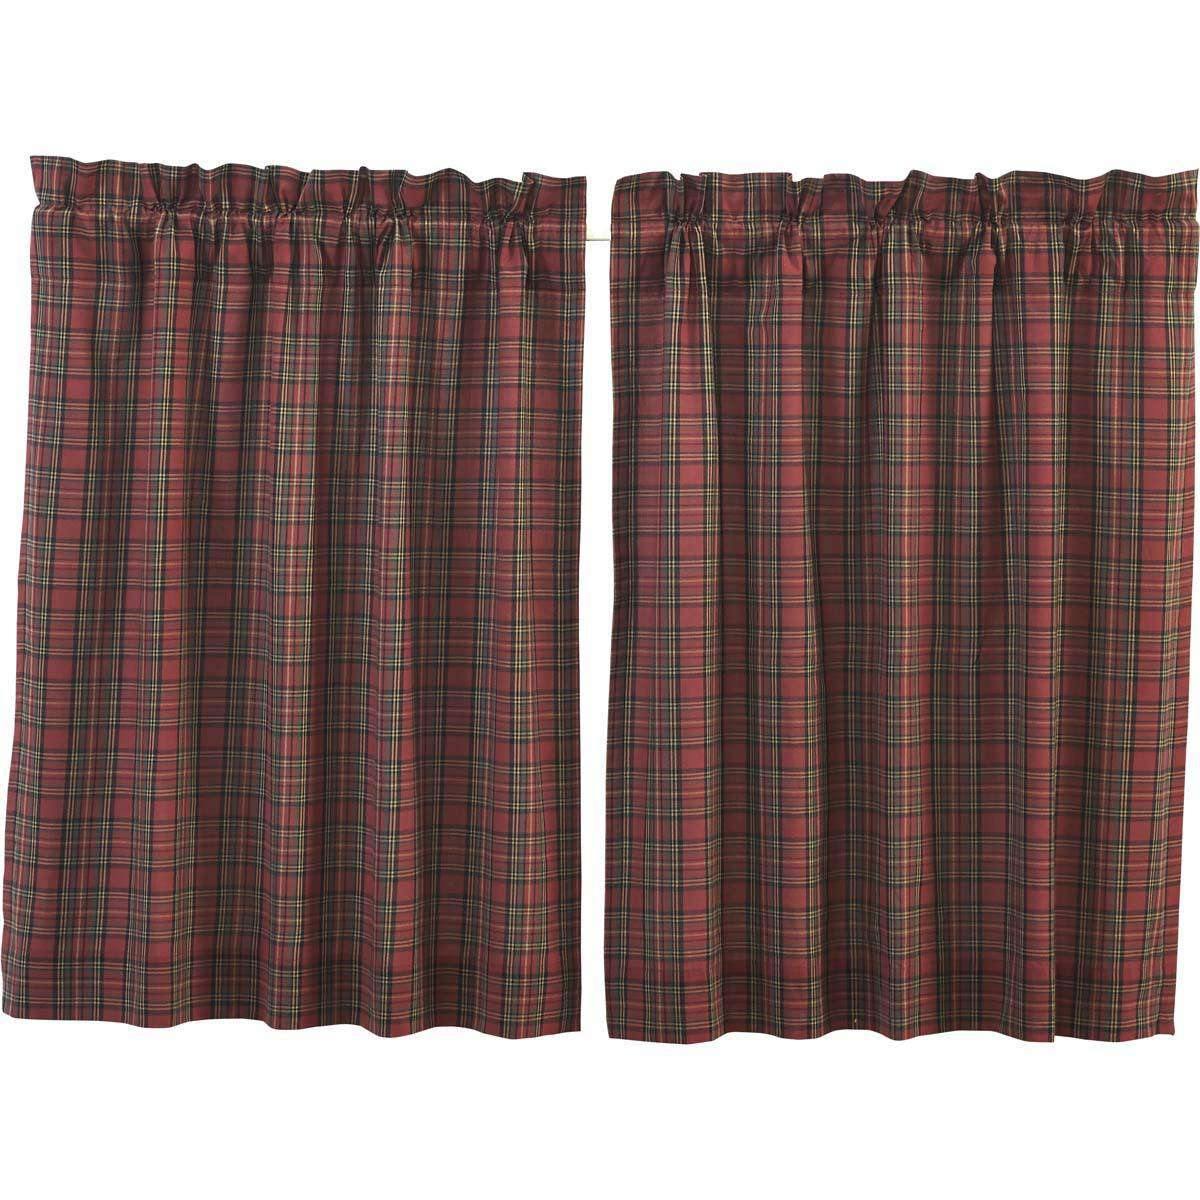 Tartan Red Plaid Tier Curtain Set of 2 L36xW36 - The Fox Decor